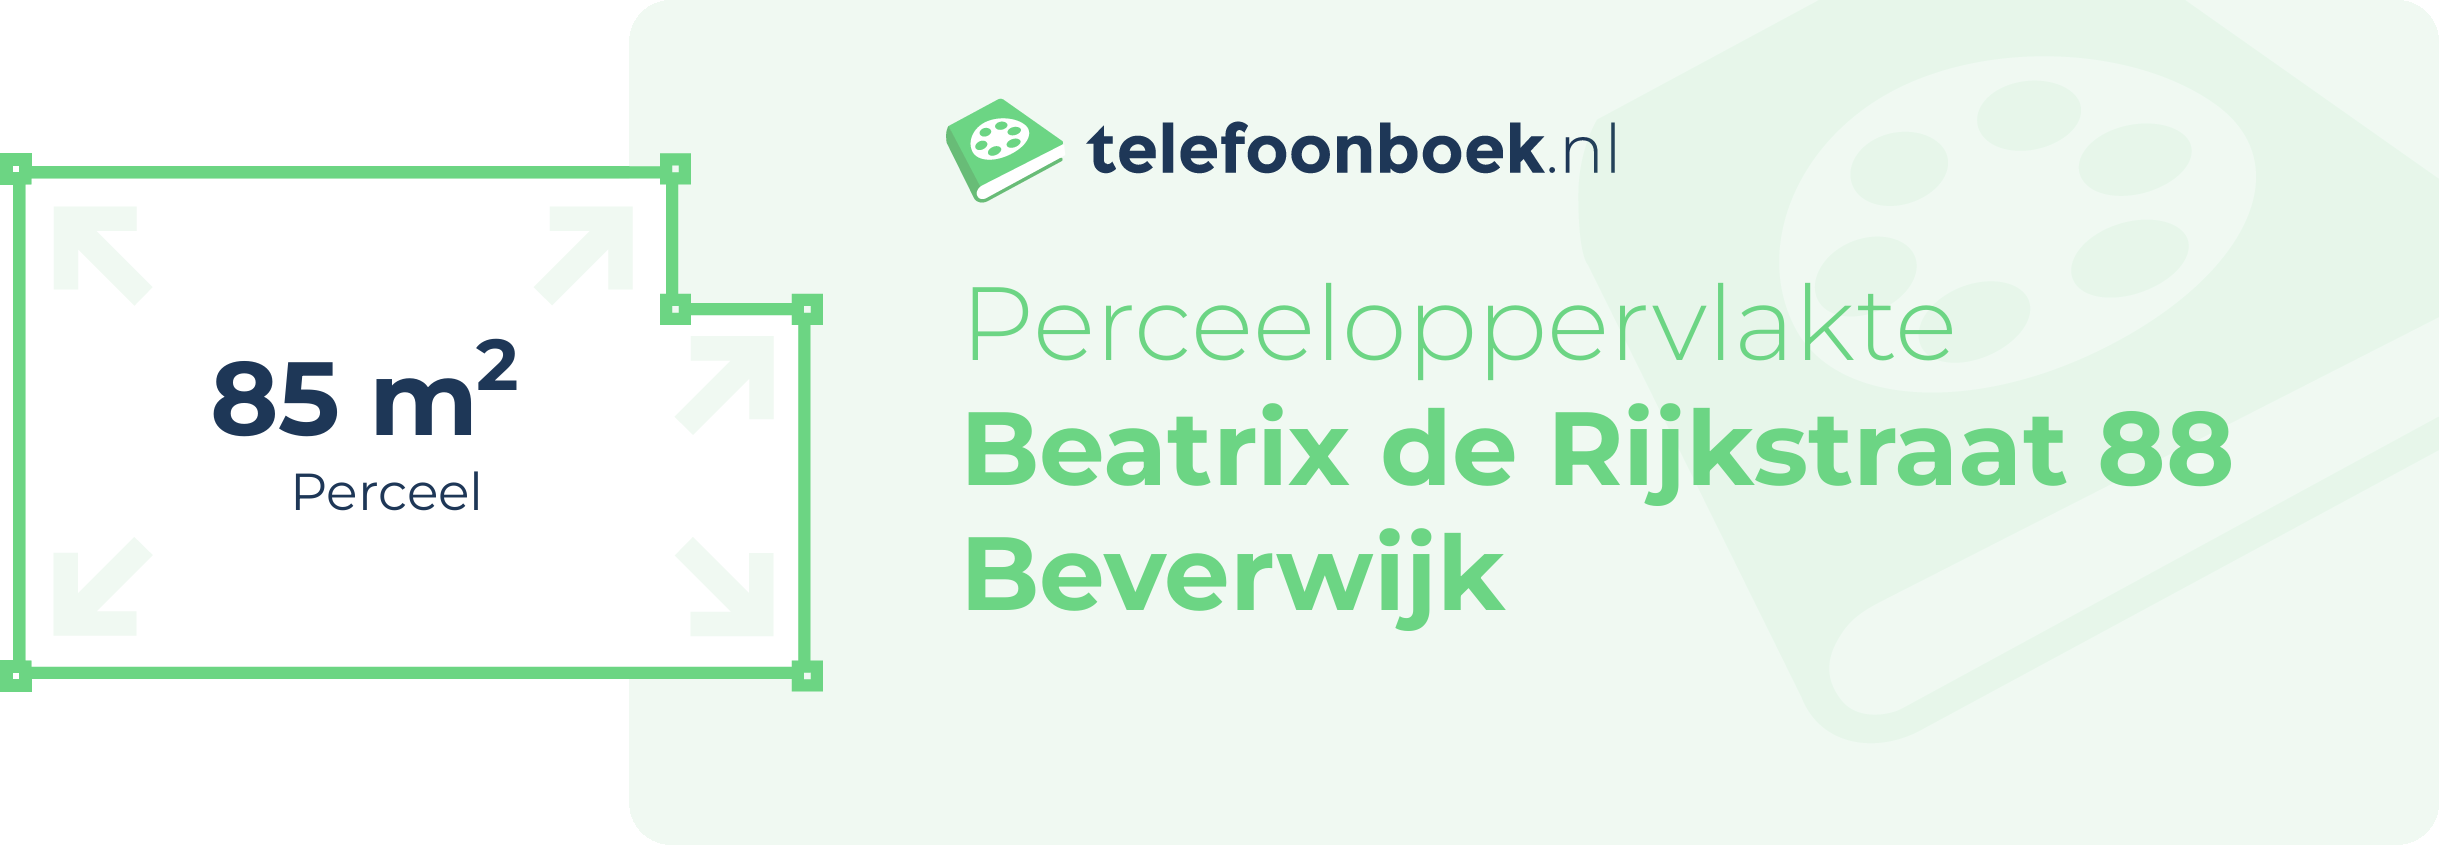 Perceeloppervlakte Beatrix De Rijkstraat 88 Beverwijk